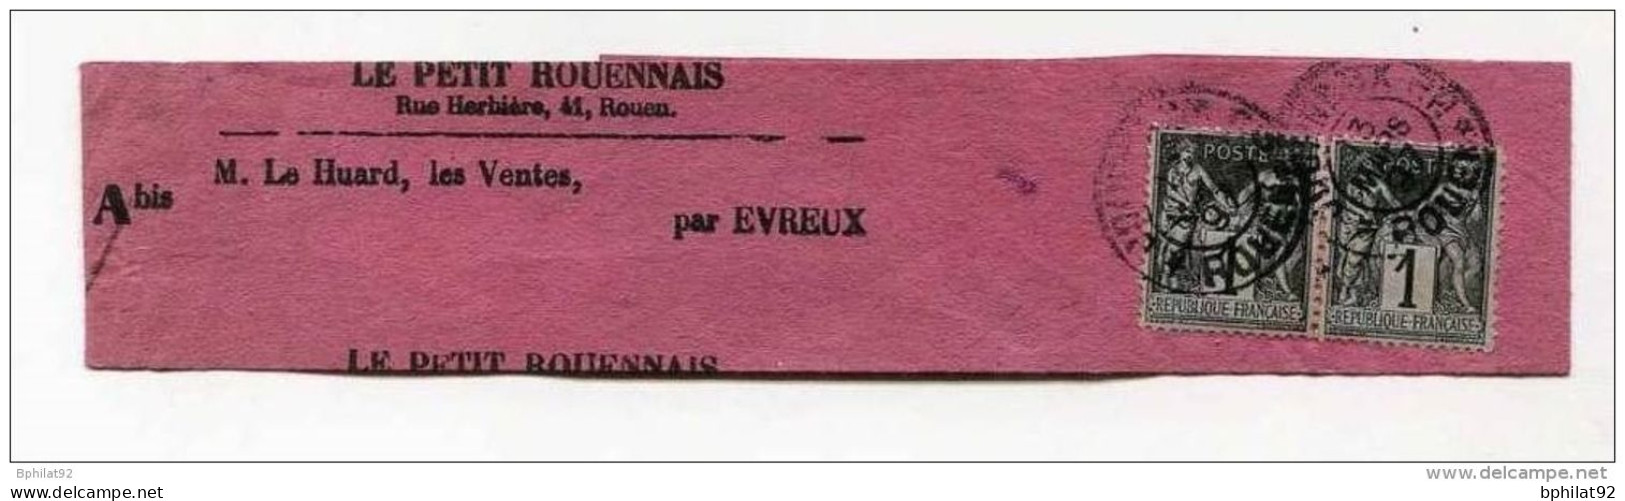 !!! PAIRE DU 1 C SAGE SUR BANDE DE JOURNAL LE PETIT ROUENNAIS 1897 - Periódicos